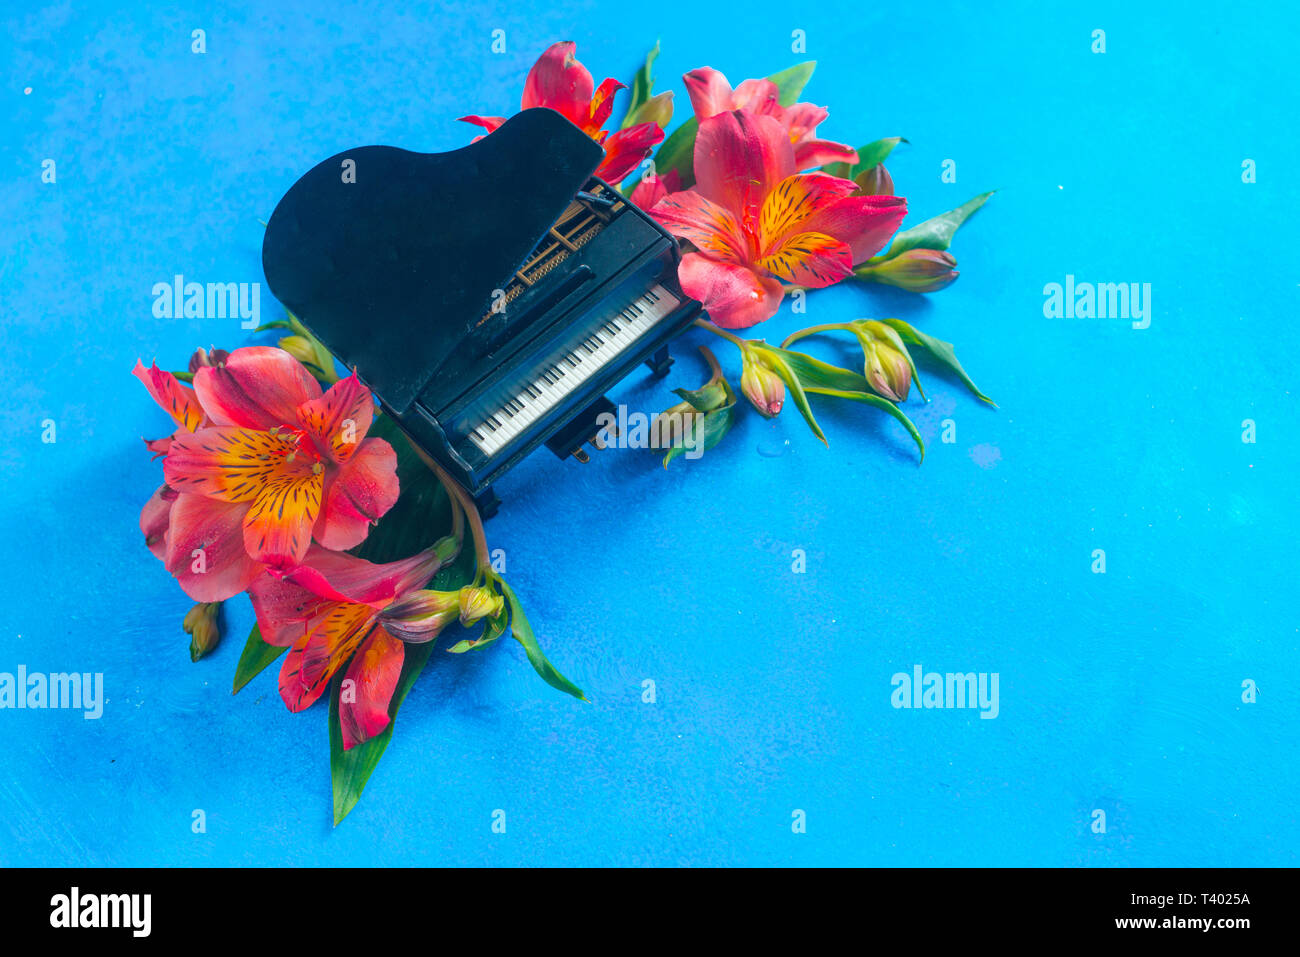 Kleine Piano mit Feder alstroemeria Blumen auf einem blauen Hintergrund mit kopieren. Frühling oder Sommer musikalische Festival Konzept mit Kopie Raum Stockfoto